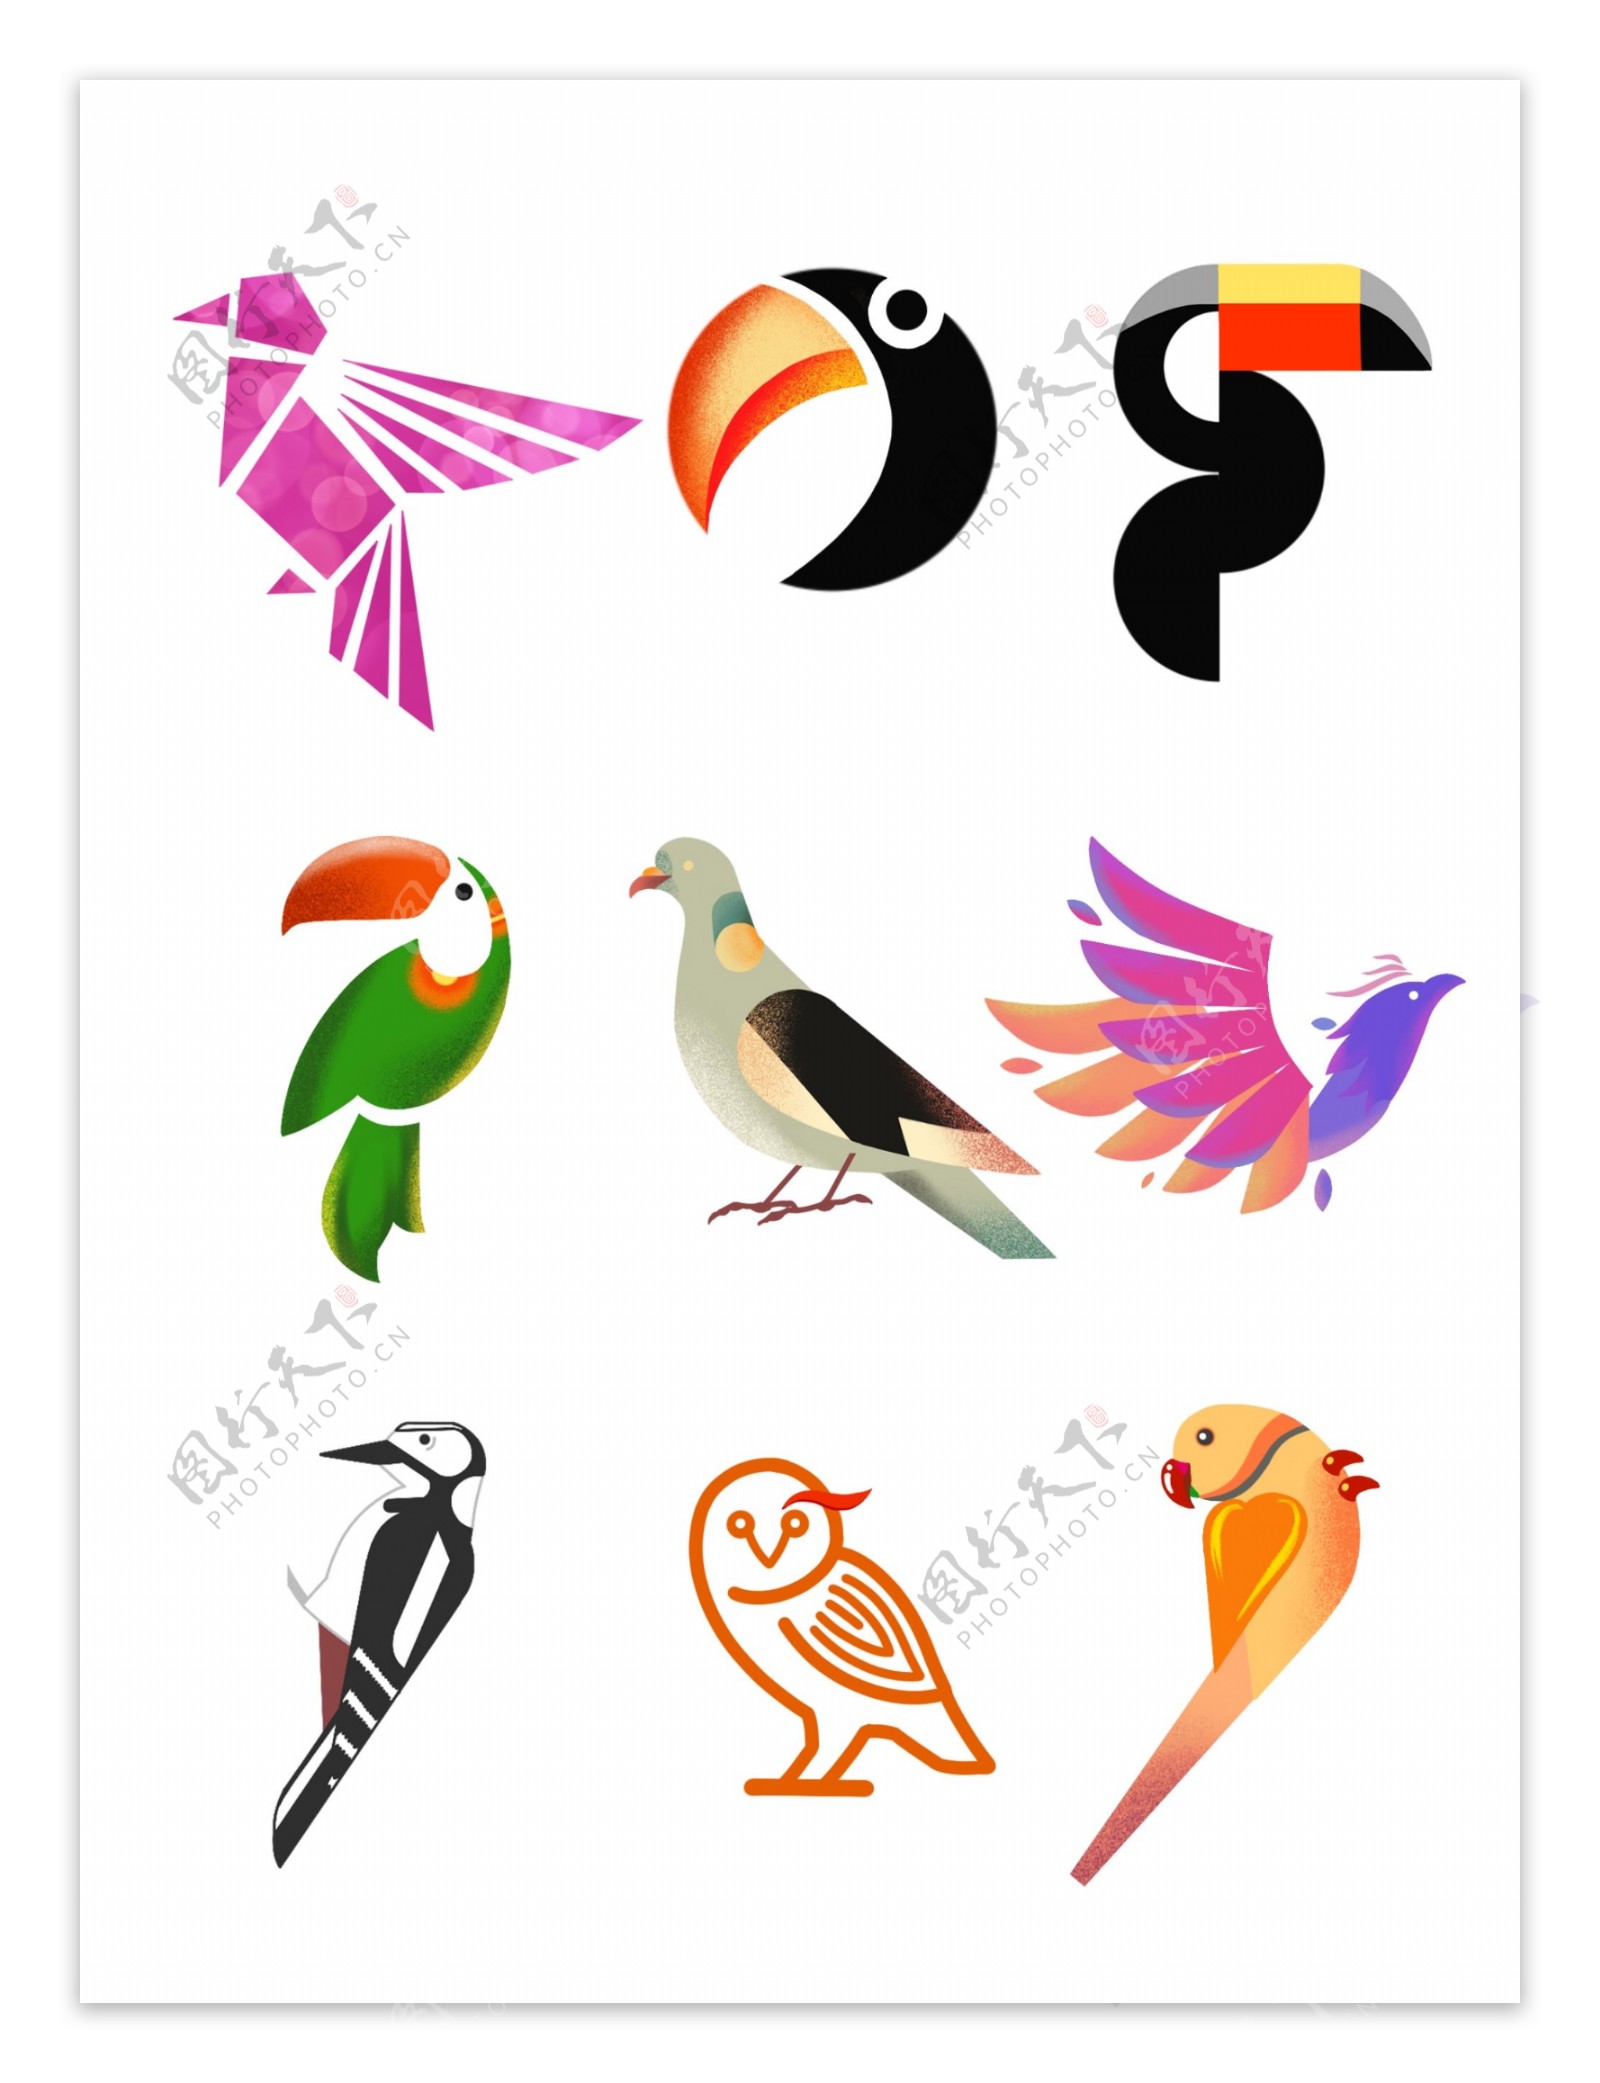 国际爱鸟日各种鸟类图标元素集合素材